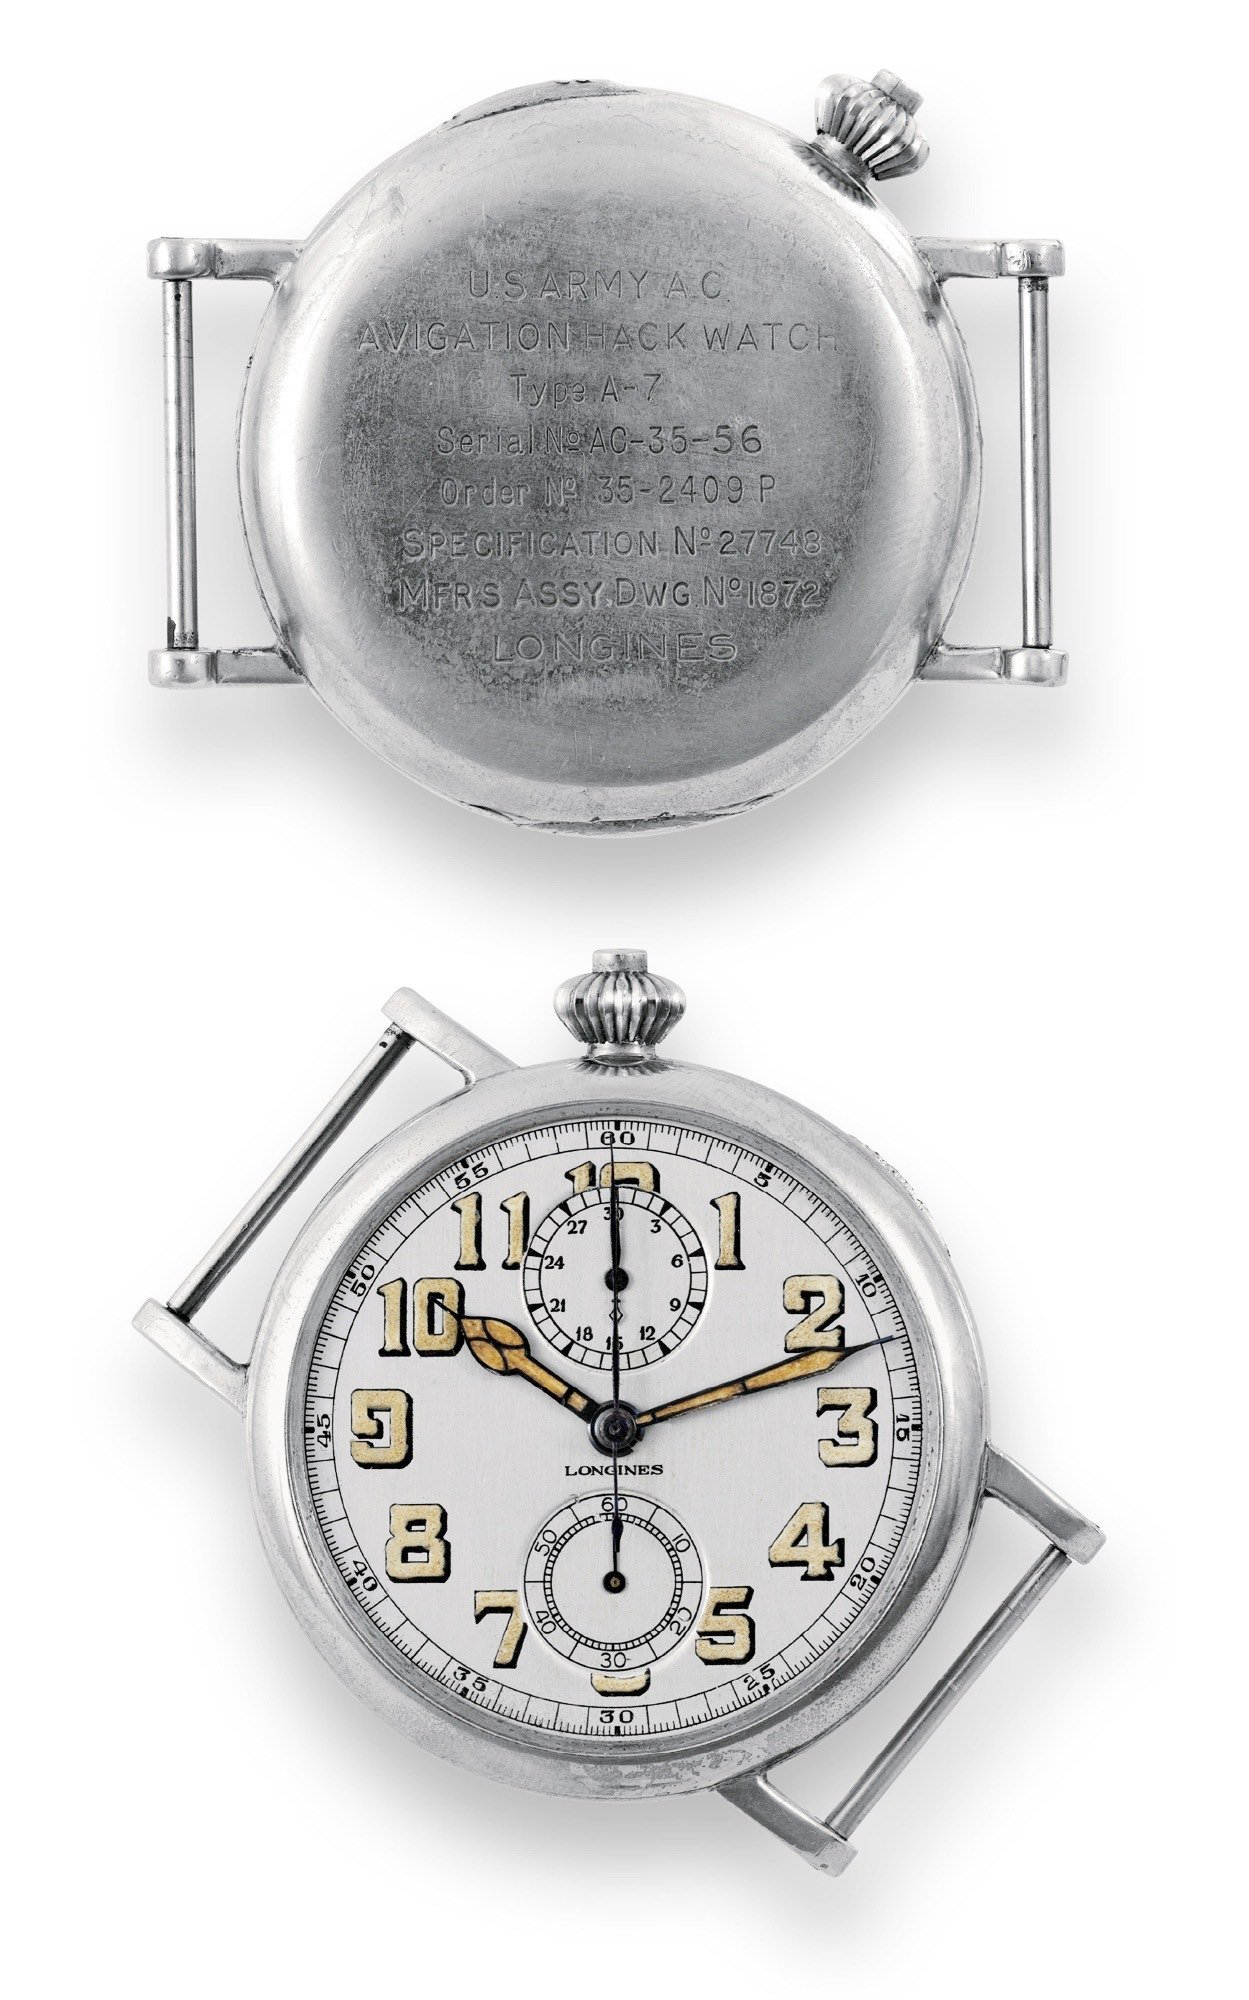 vintage longines avigation A7 pilots chronograph